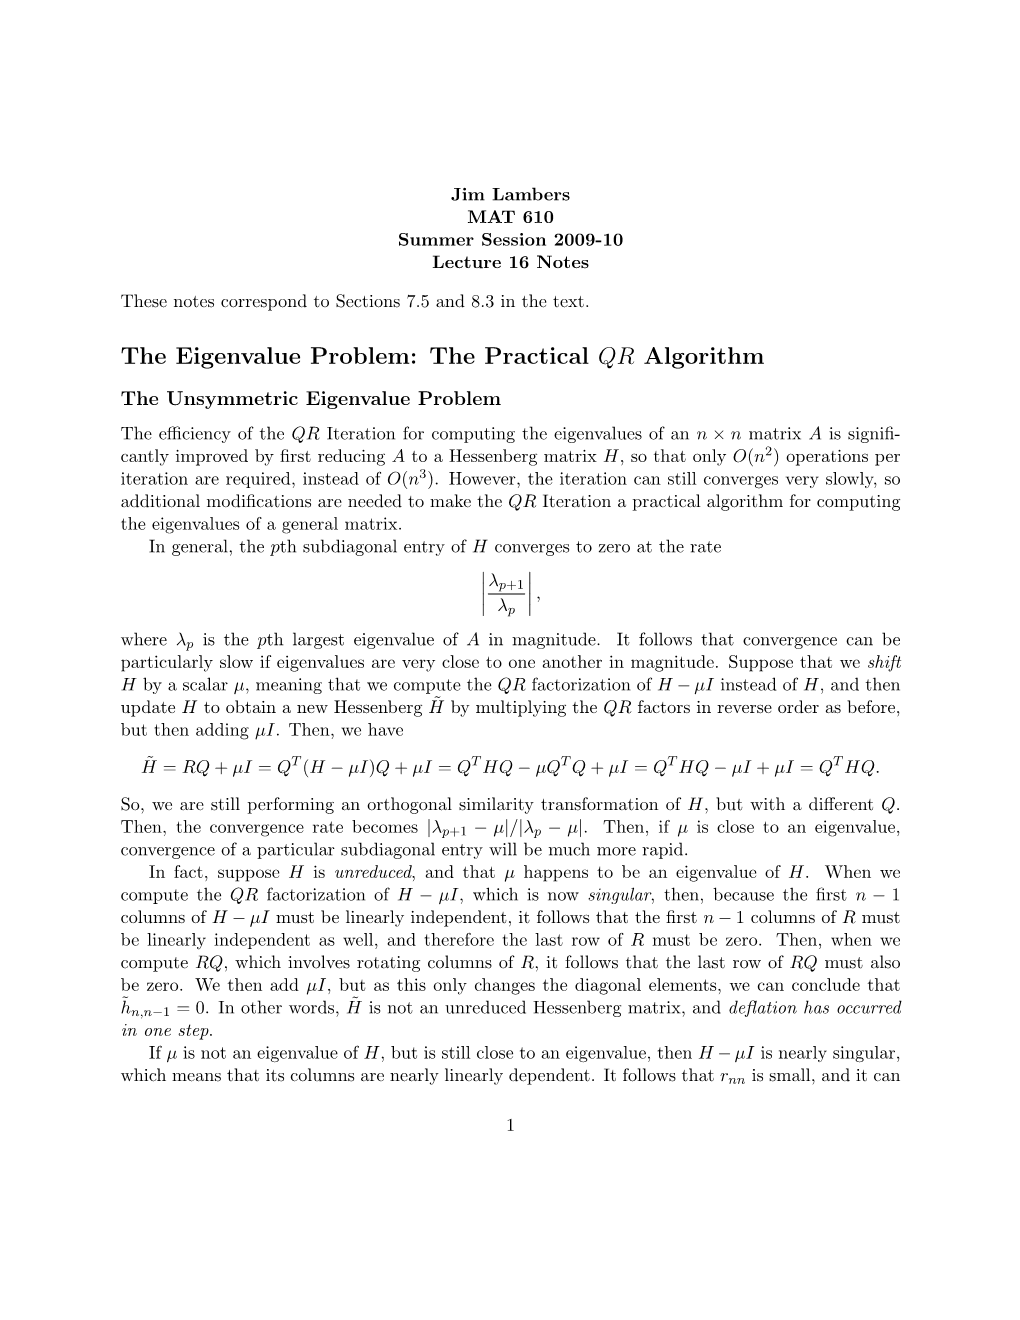 The Eigenvalue Problem: the Practical QR Algorithm